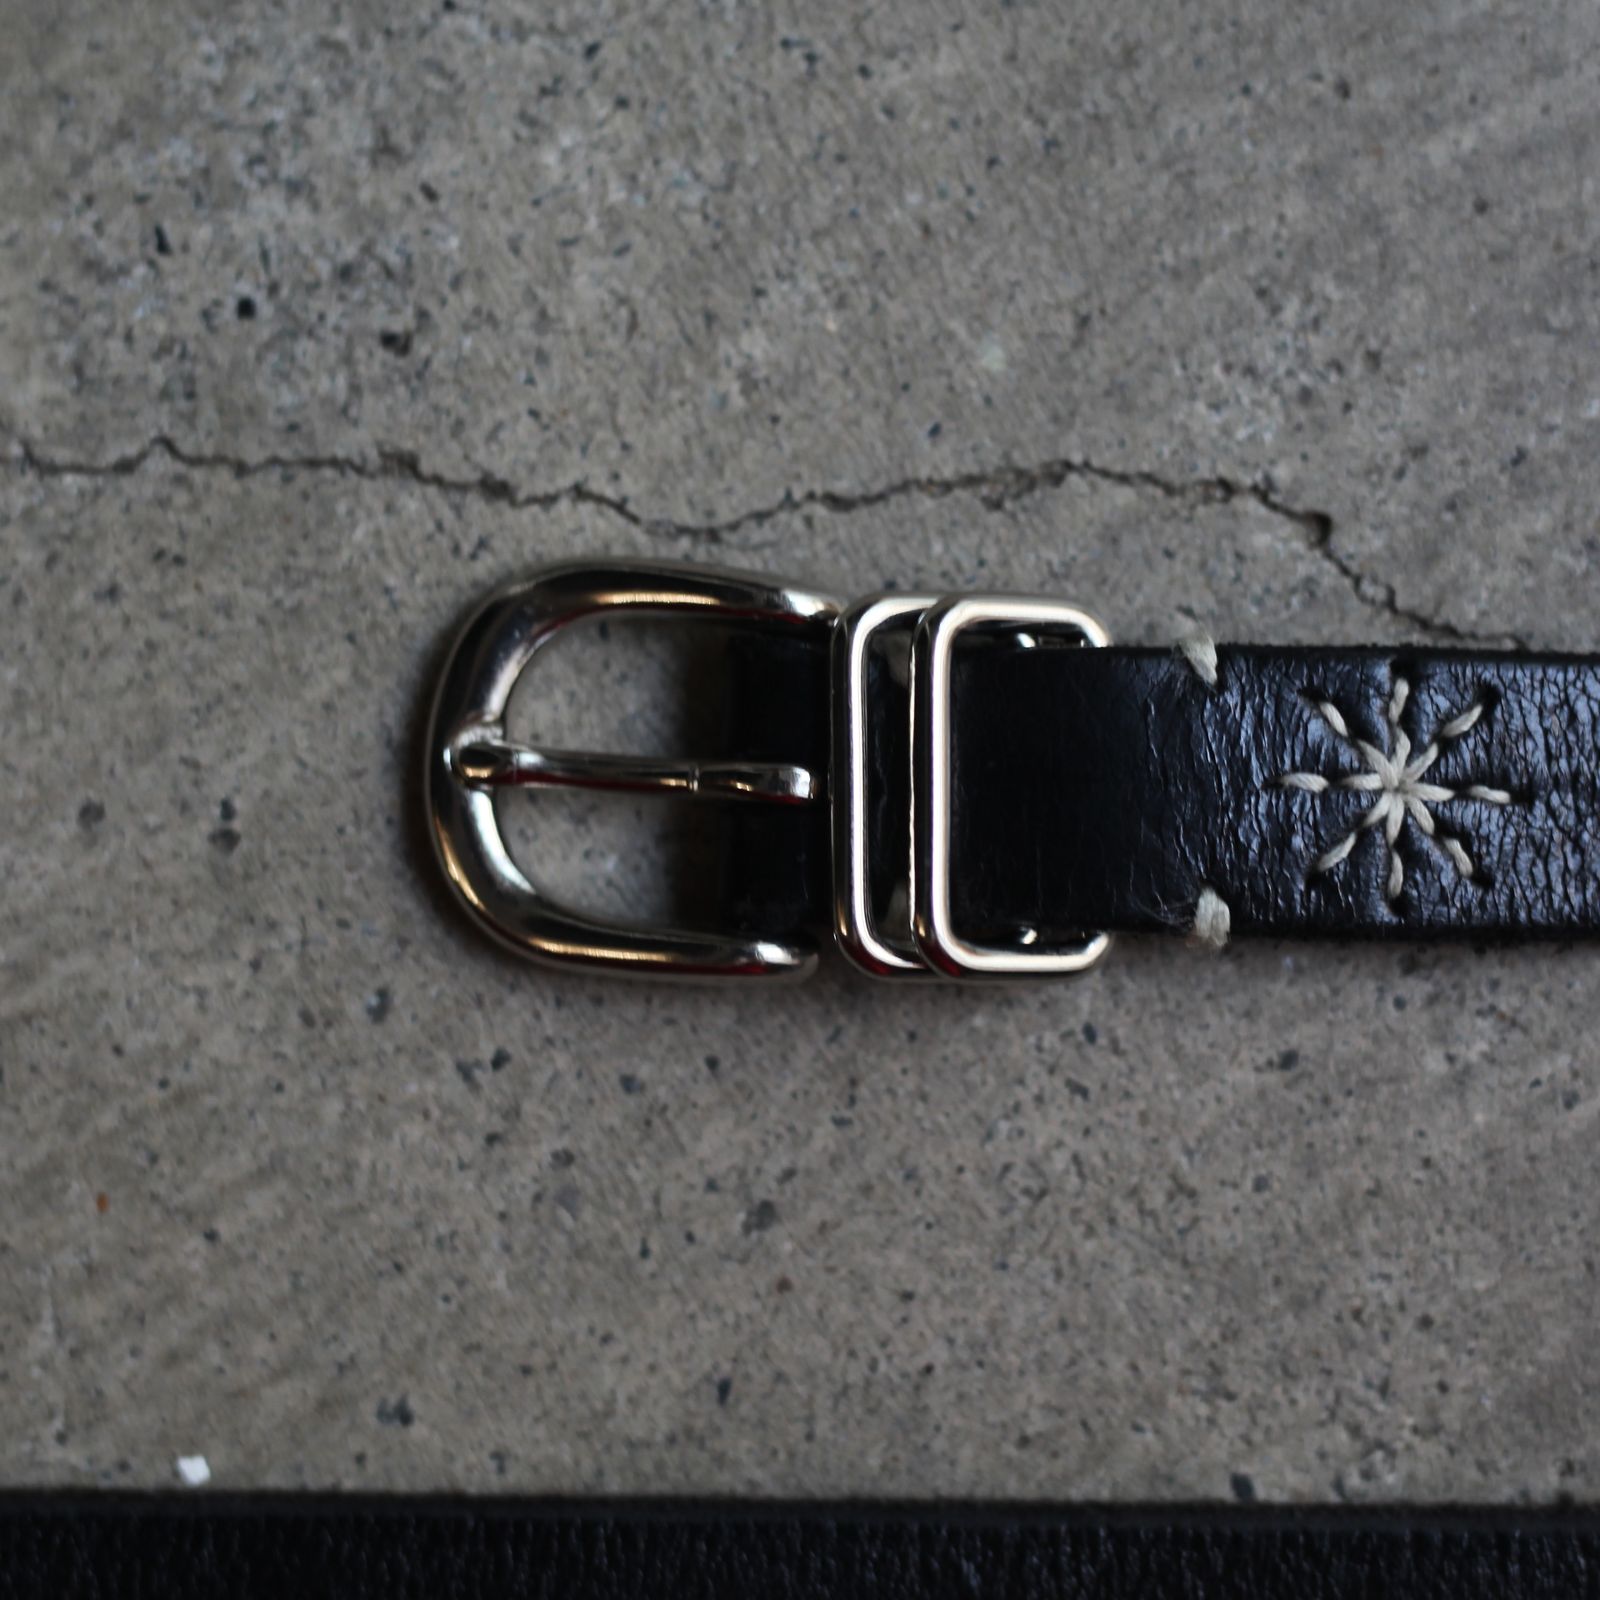 られたレザ】 SUGARHILL 21aw Embroidery Leather Beltの通販 by たん